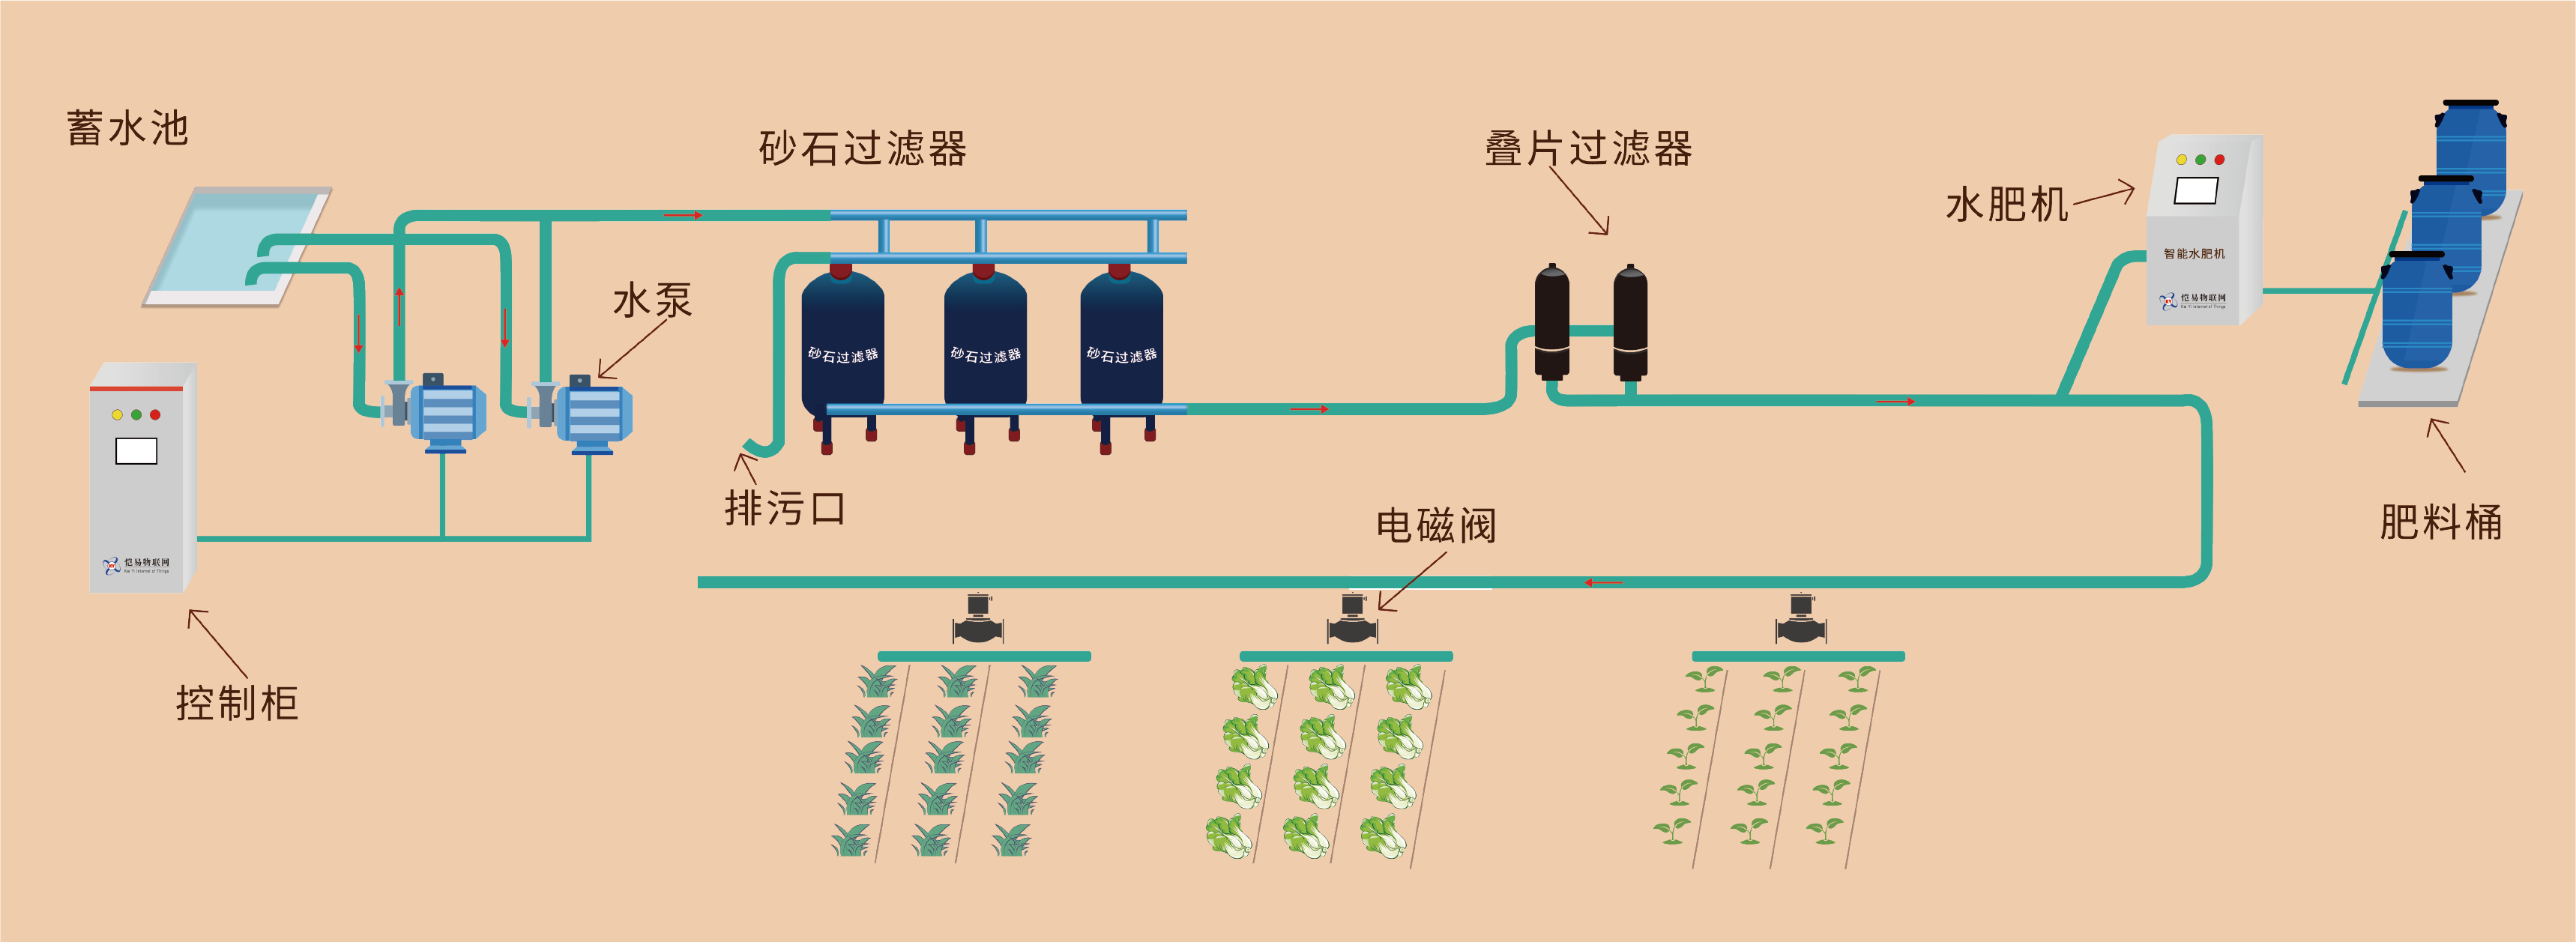 水肥一体化系统原理图